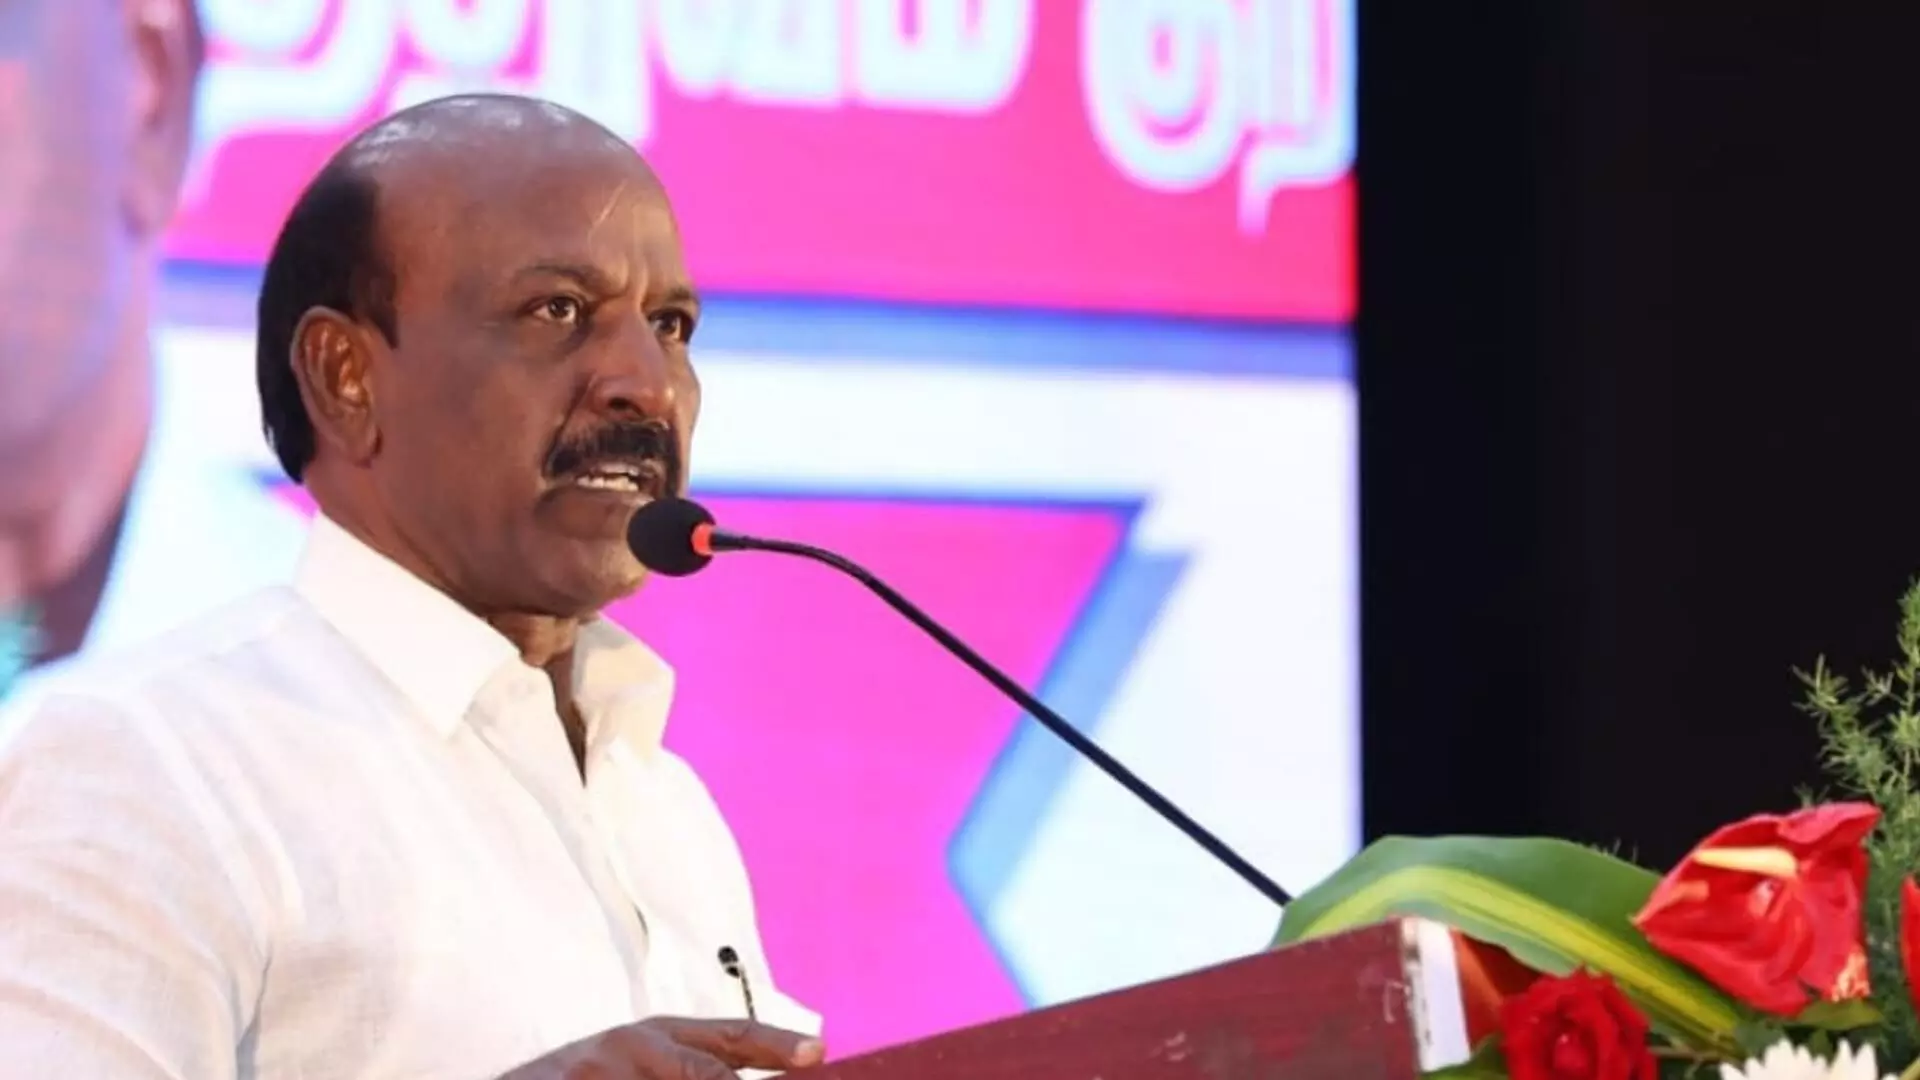 शासन परिवर्तन ही NEET परीक्षा का समाधान है- तमिलनाडु के स्वास्थ्य मंत्री